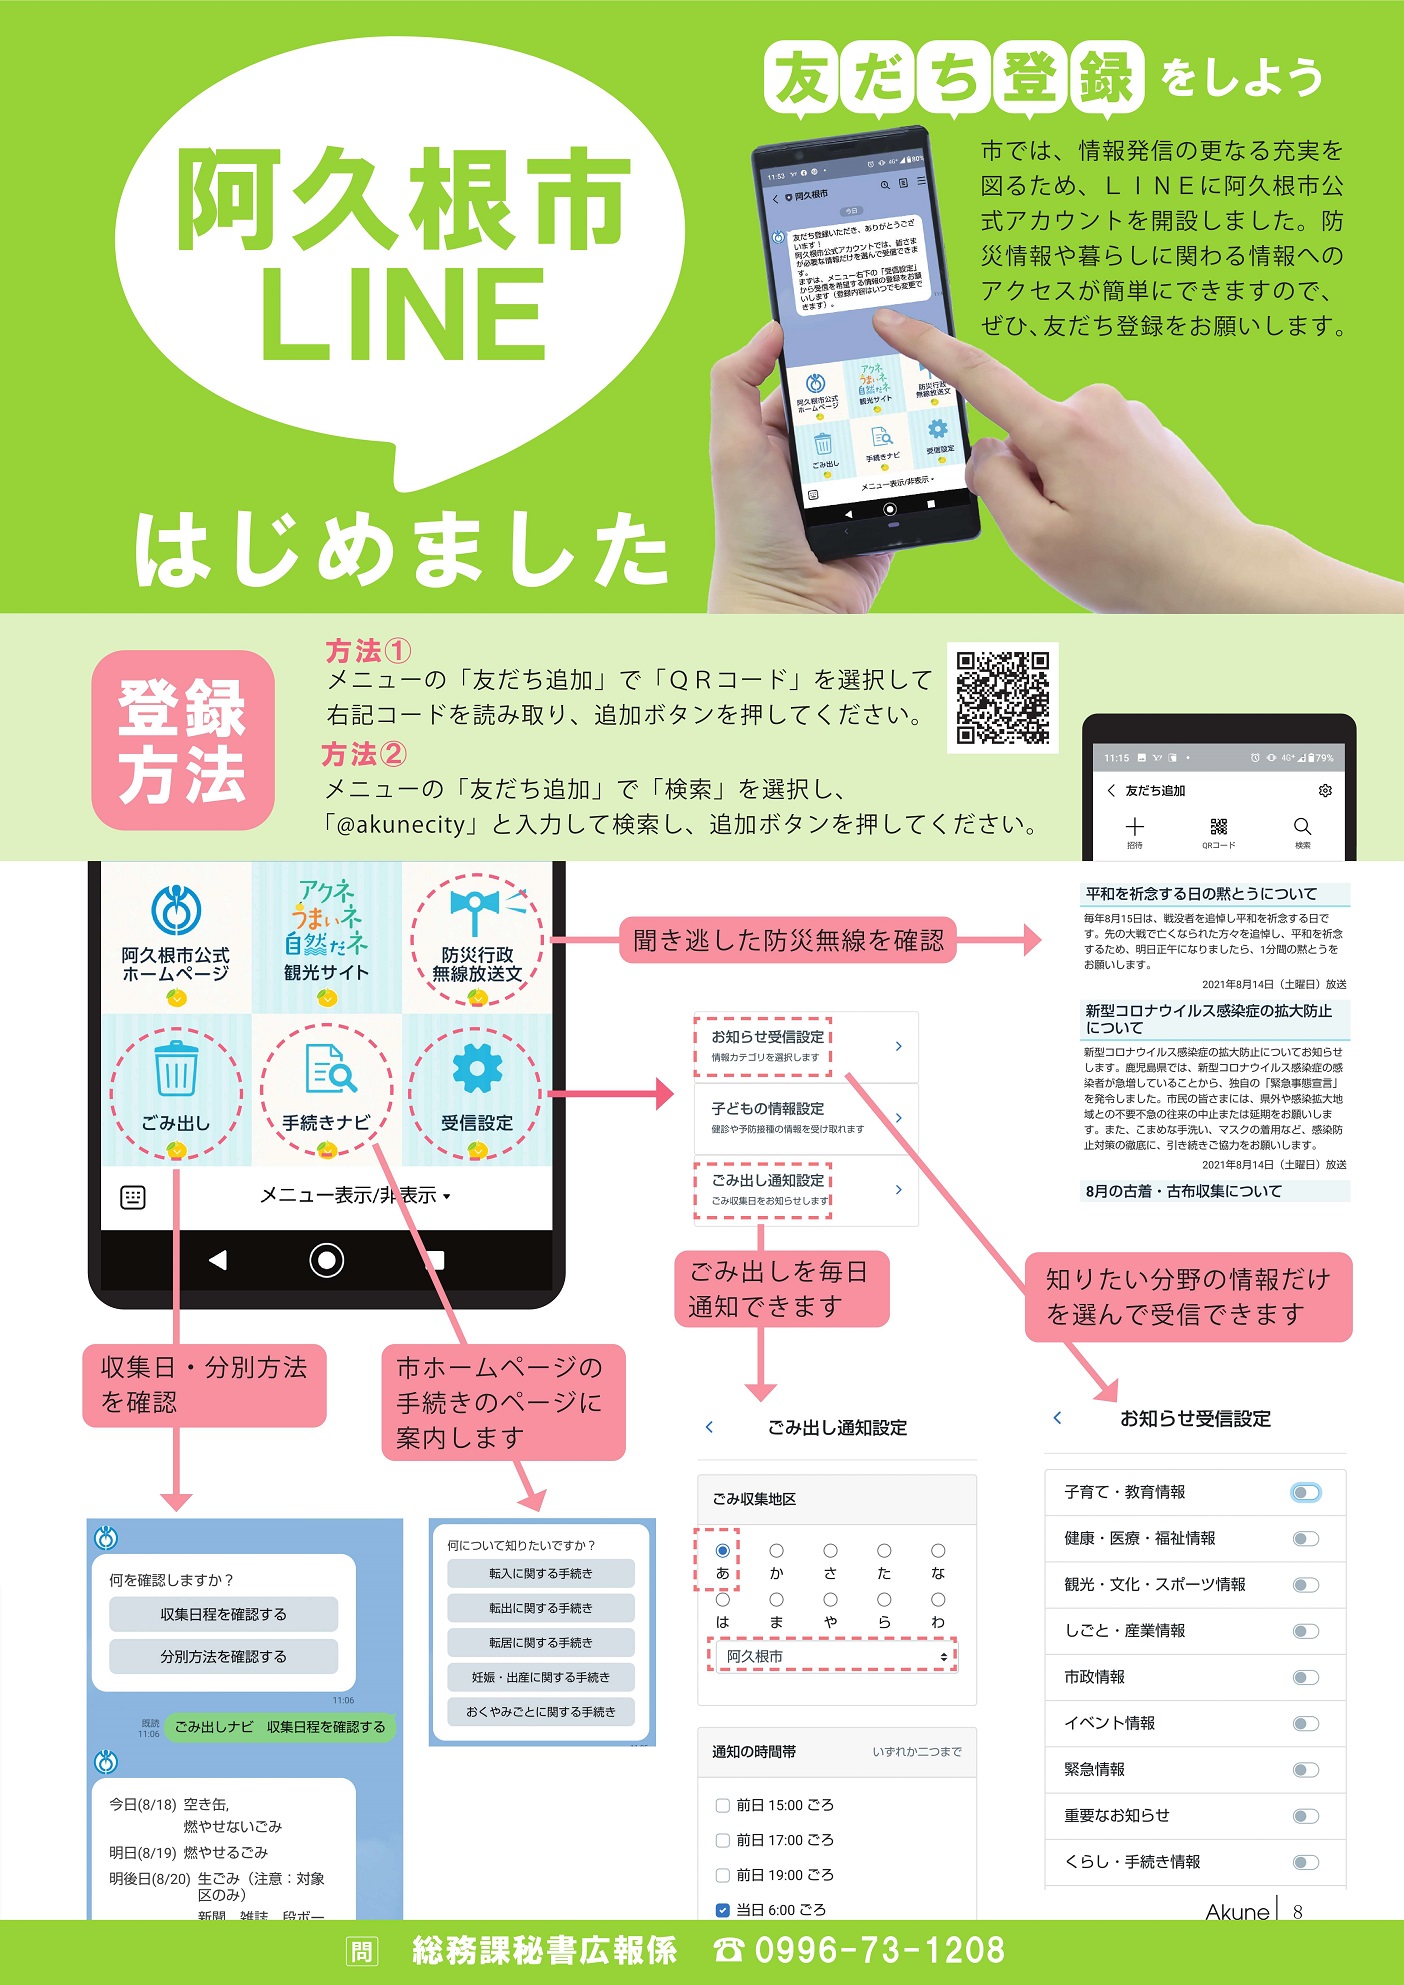 広報あくね令和3年9月号の阿久根市LINE公式アカウントに関するページの画像